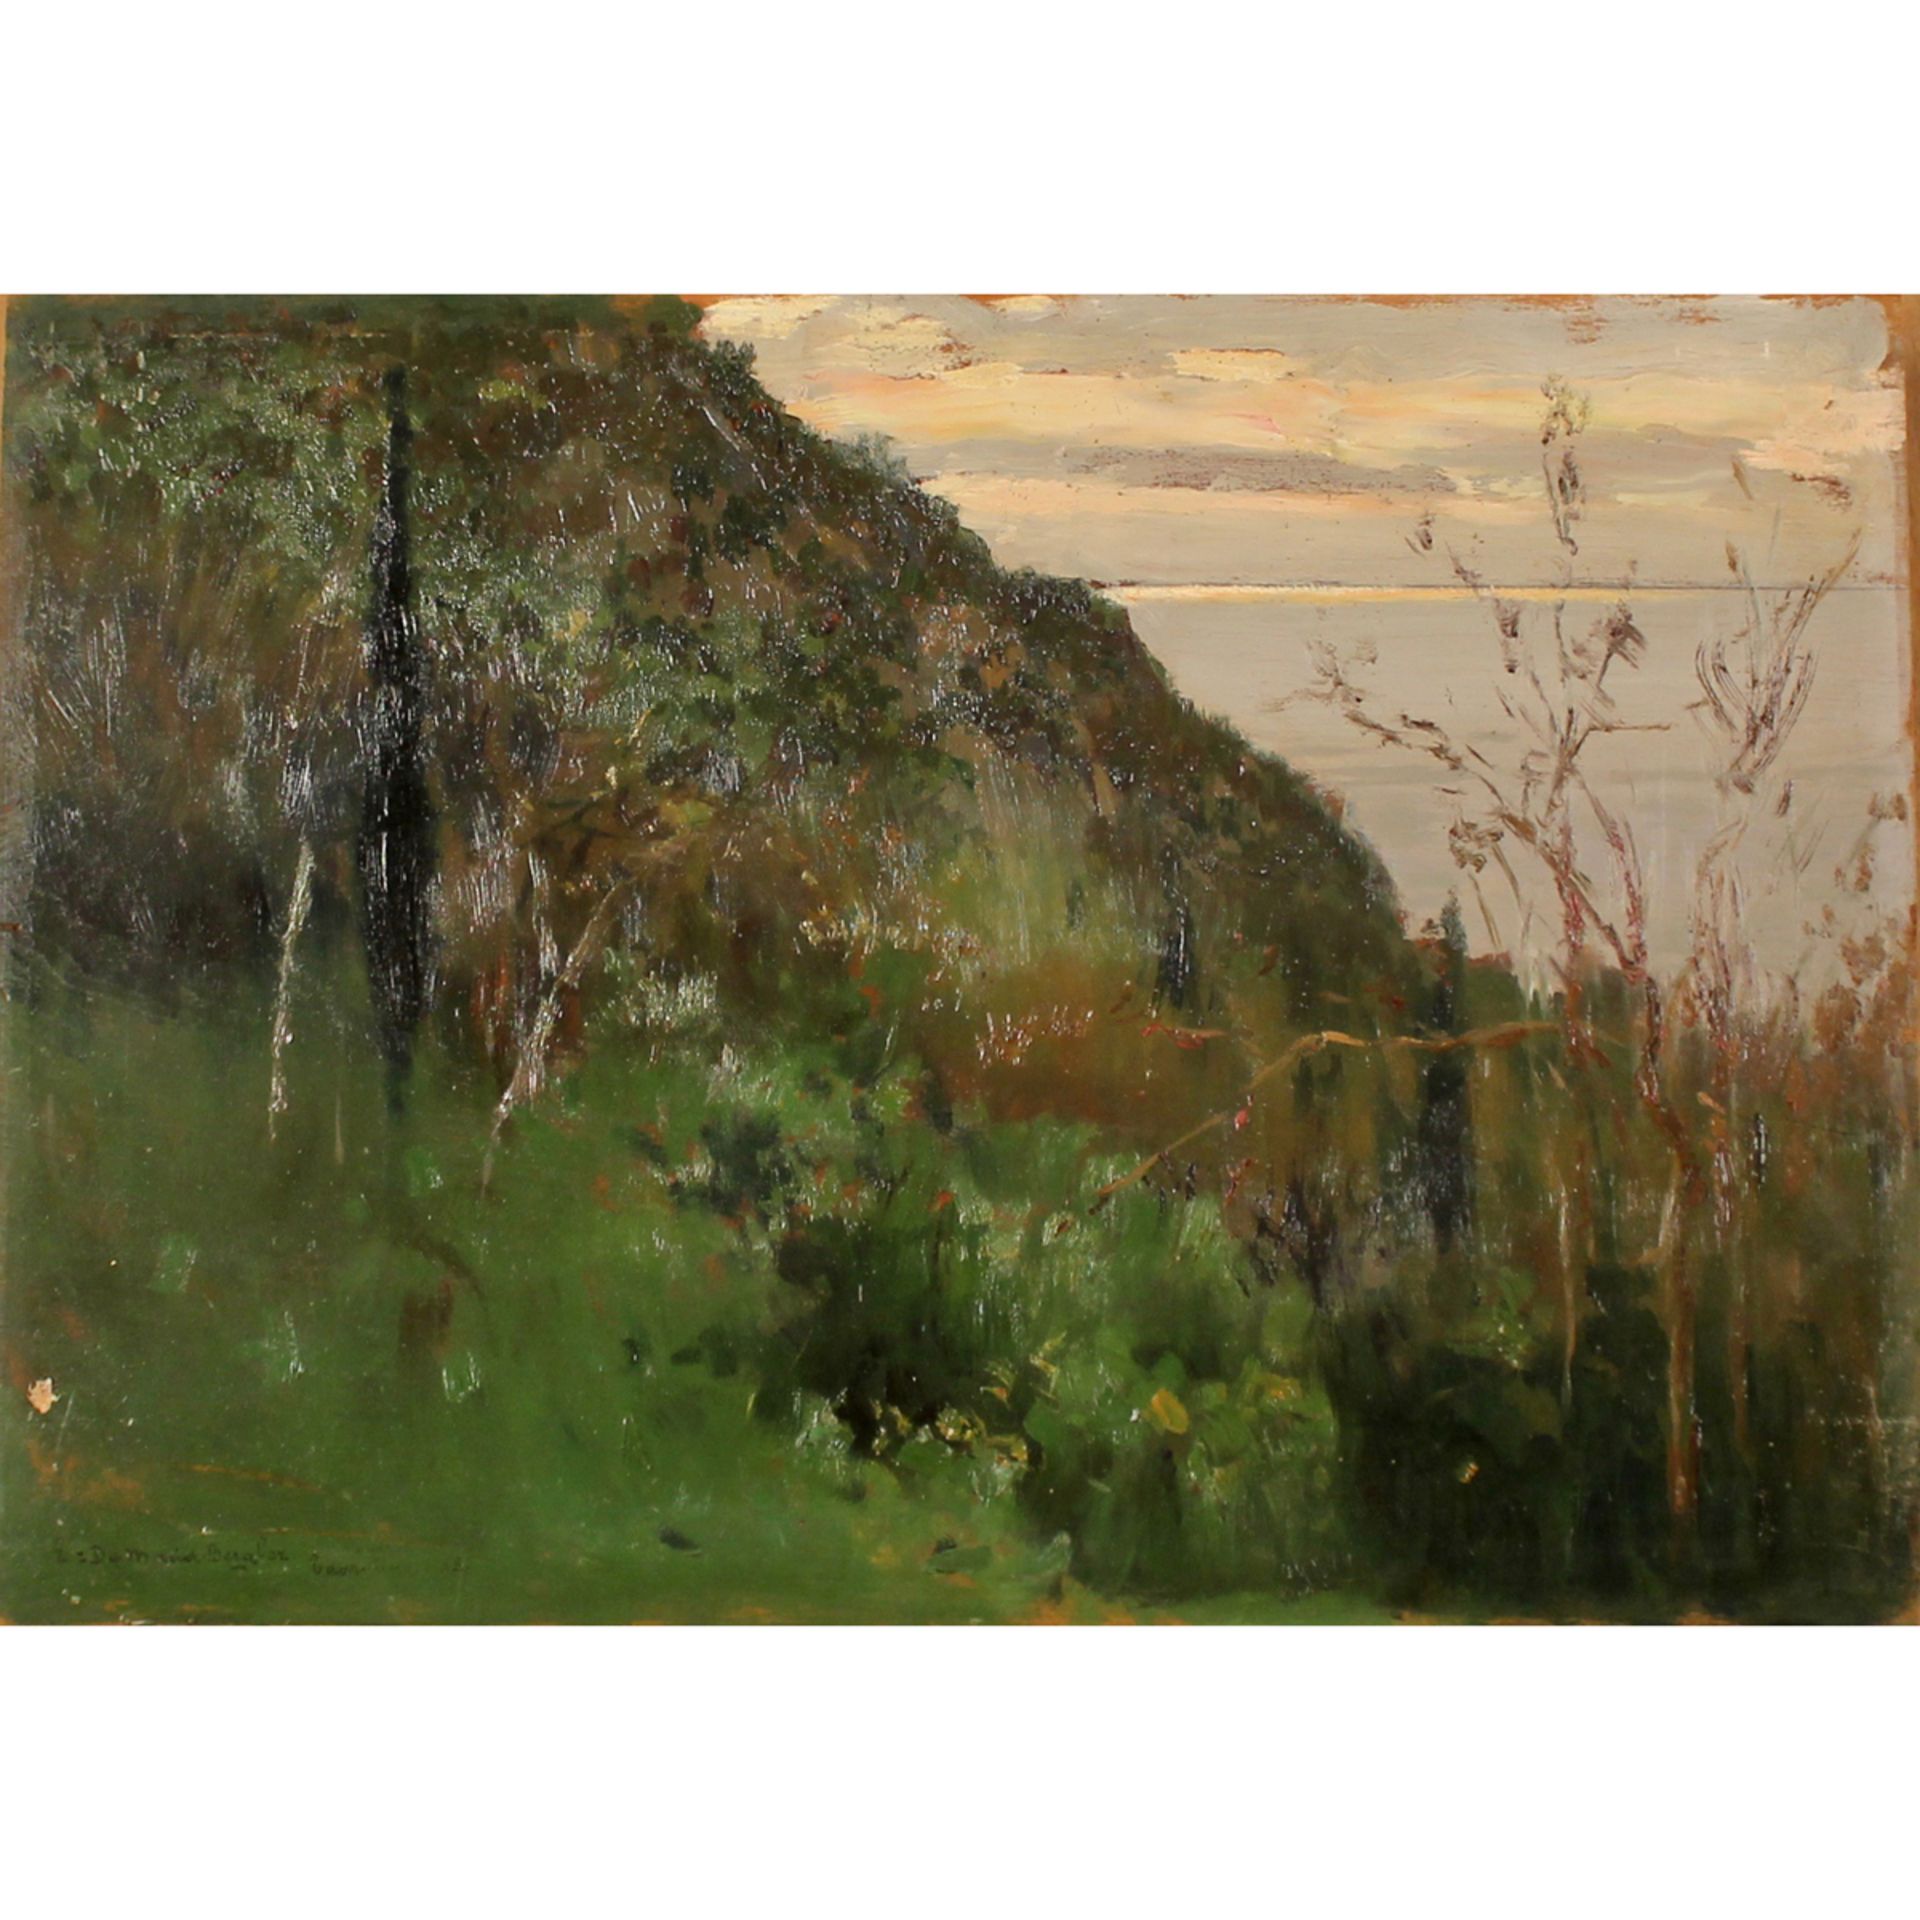 ETTORE DE MARIA BERGLER (1850-1938) "TAORMINA"